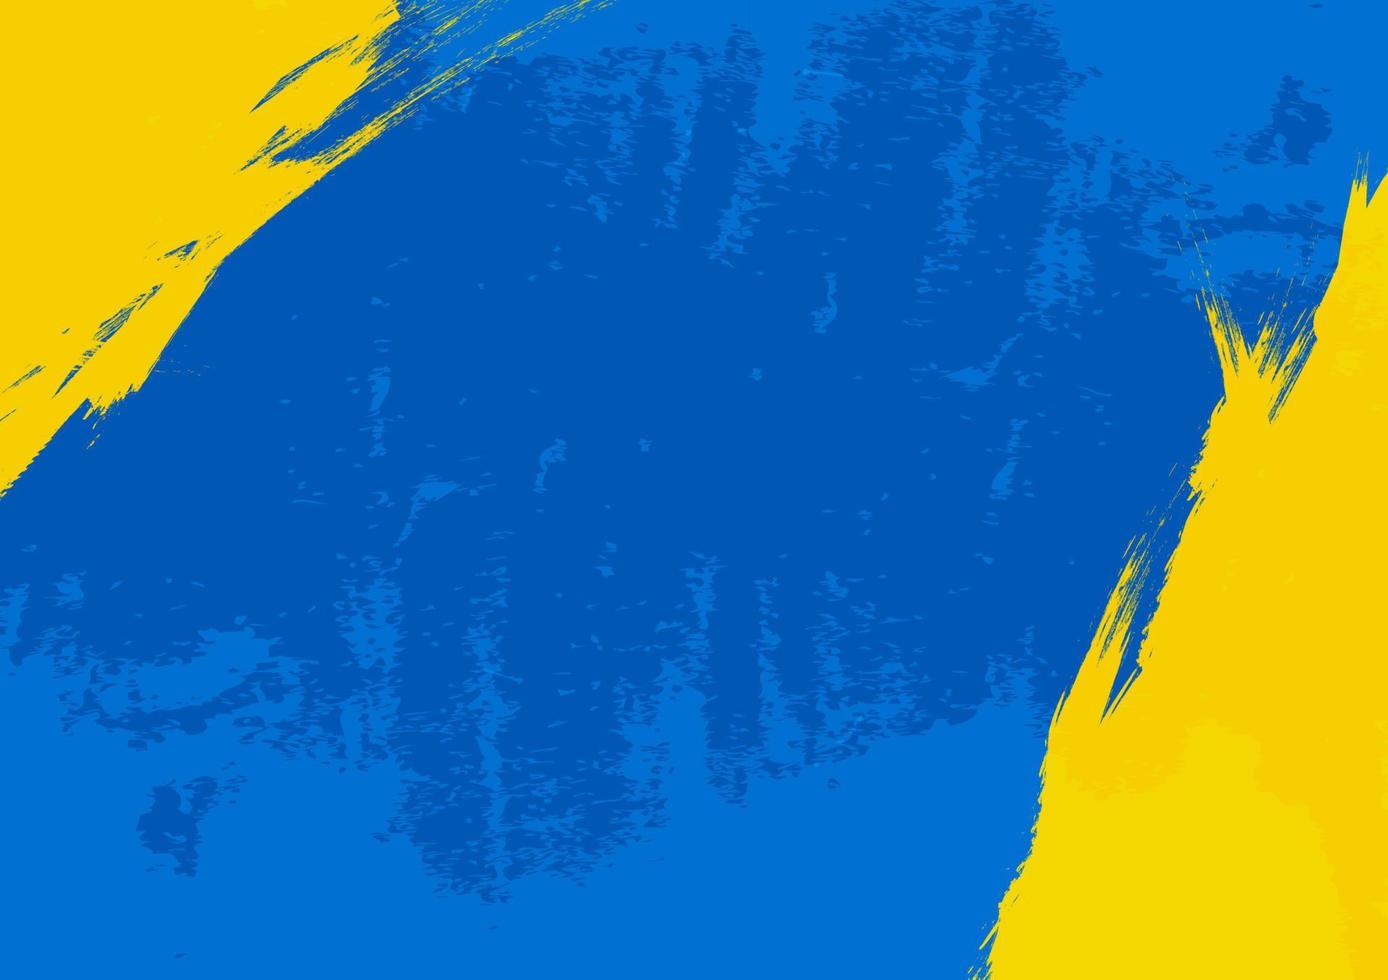 Grunge gelbe und blaue Hintergrundtextur. vektor